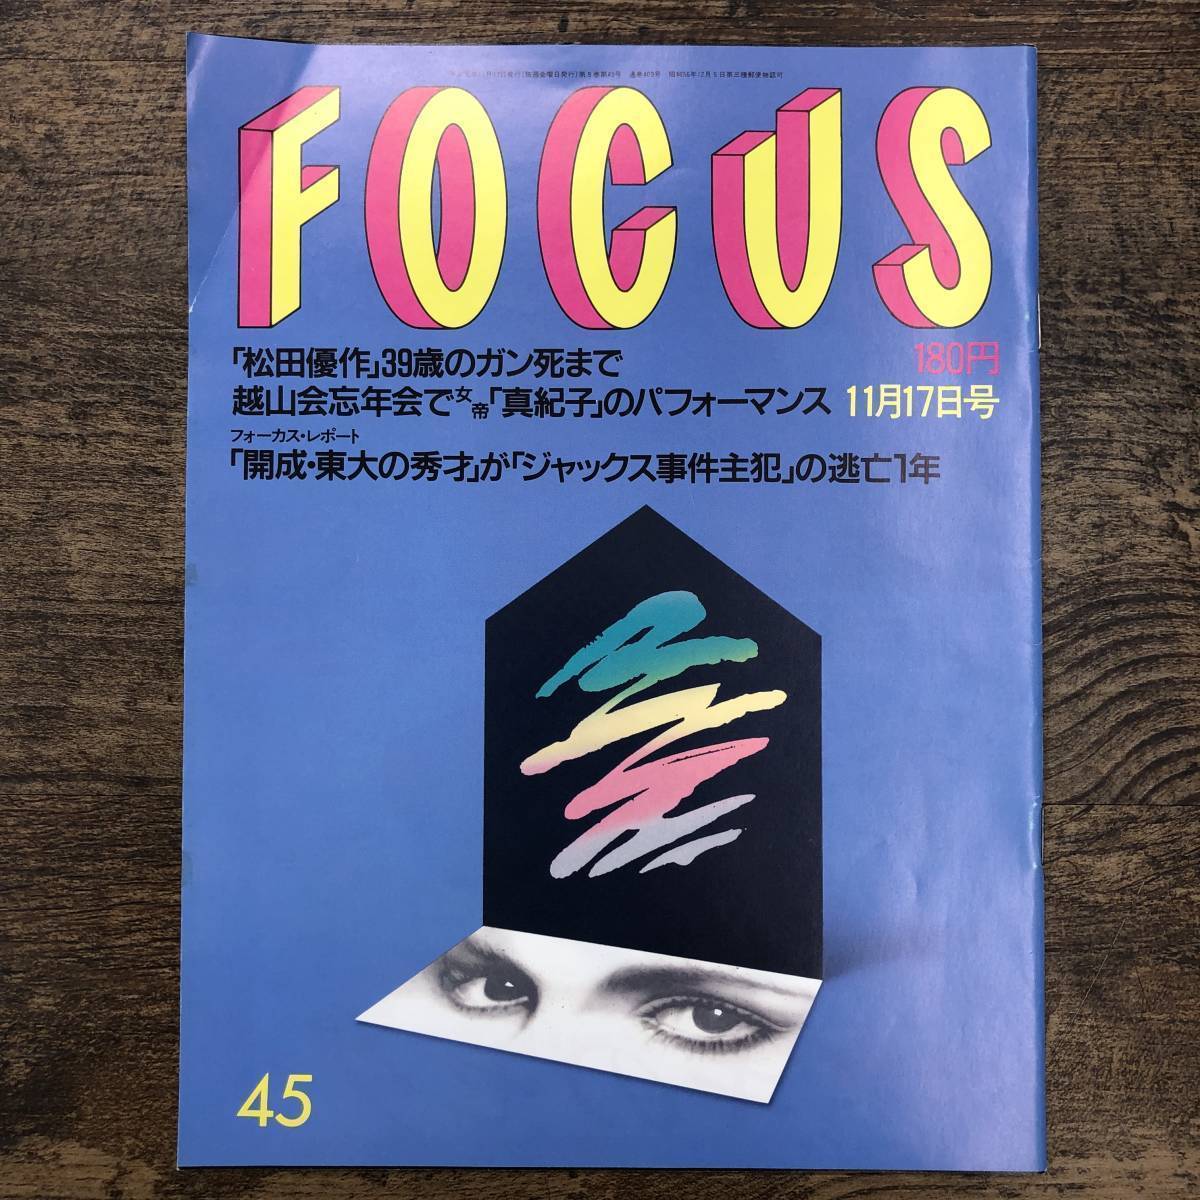 Z-6123#FOCUS Focus 1989 год 11 месяц 17 день номер # Matsuda Yusaku рисовое поле средний подлинный ..# Shinchosha # эпоха Heisei изначальный год выпуск еженедельный иллюстрированный журнал #